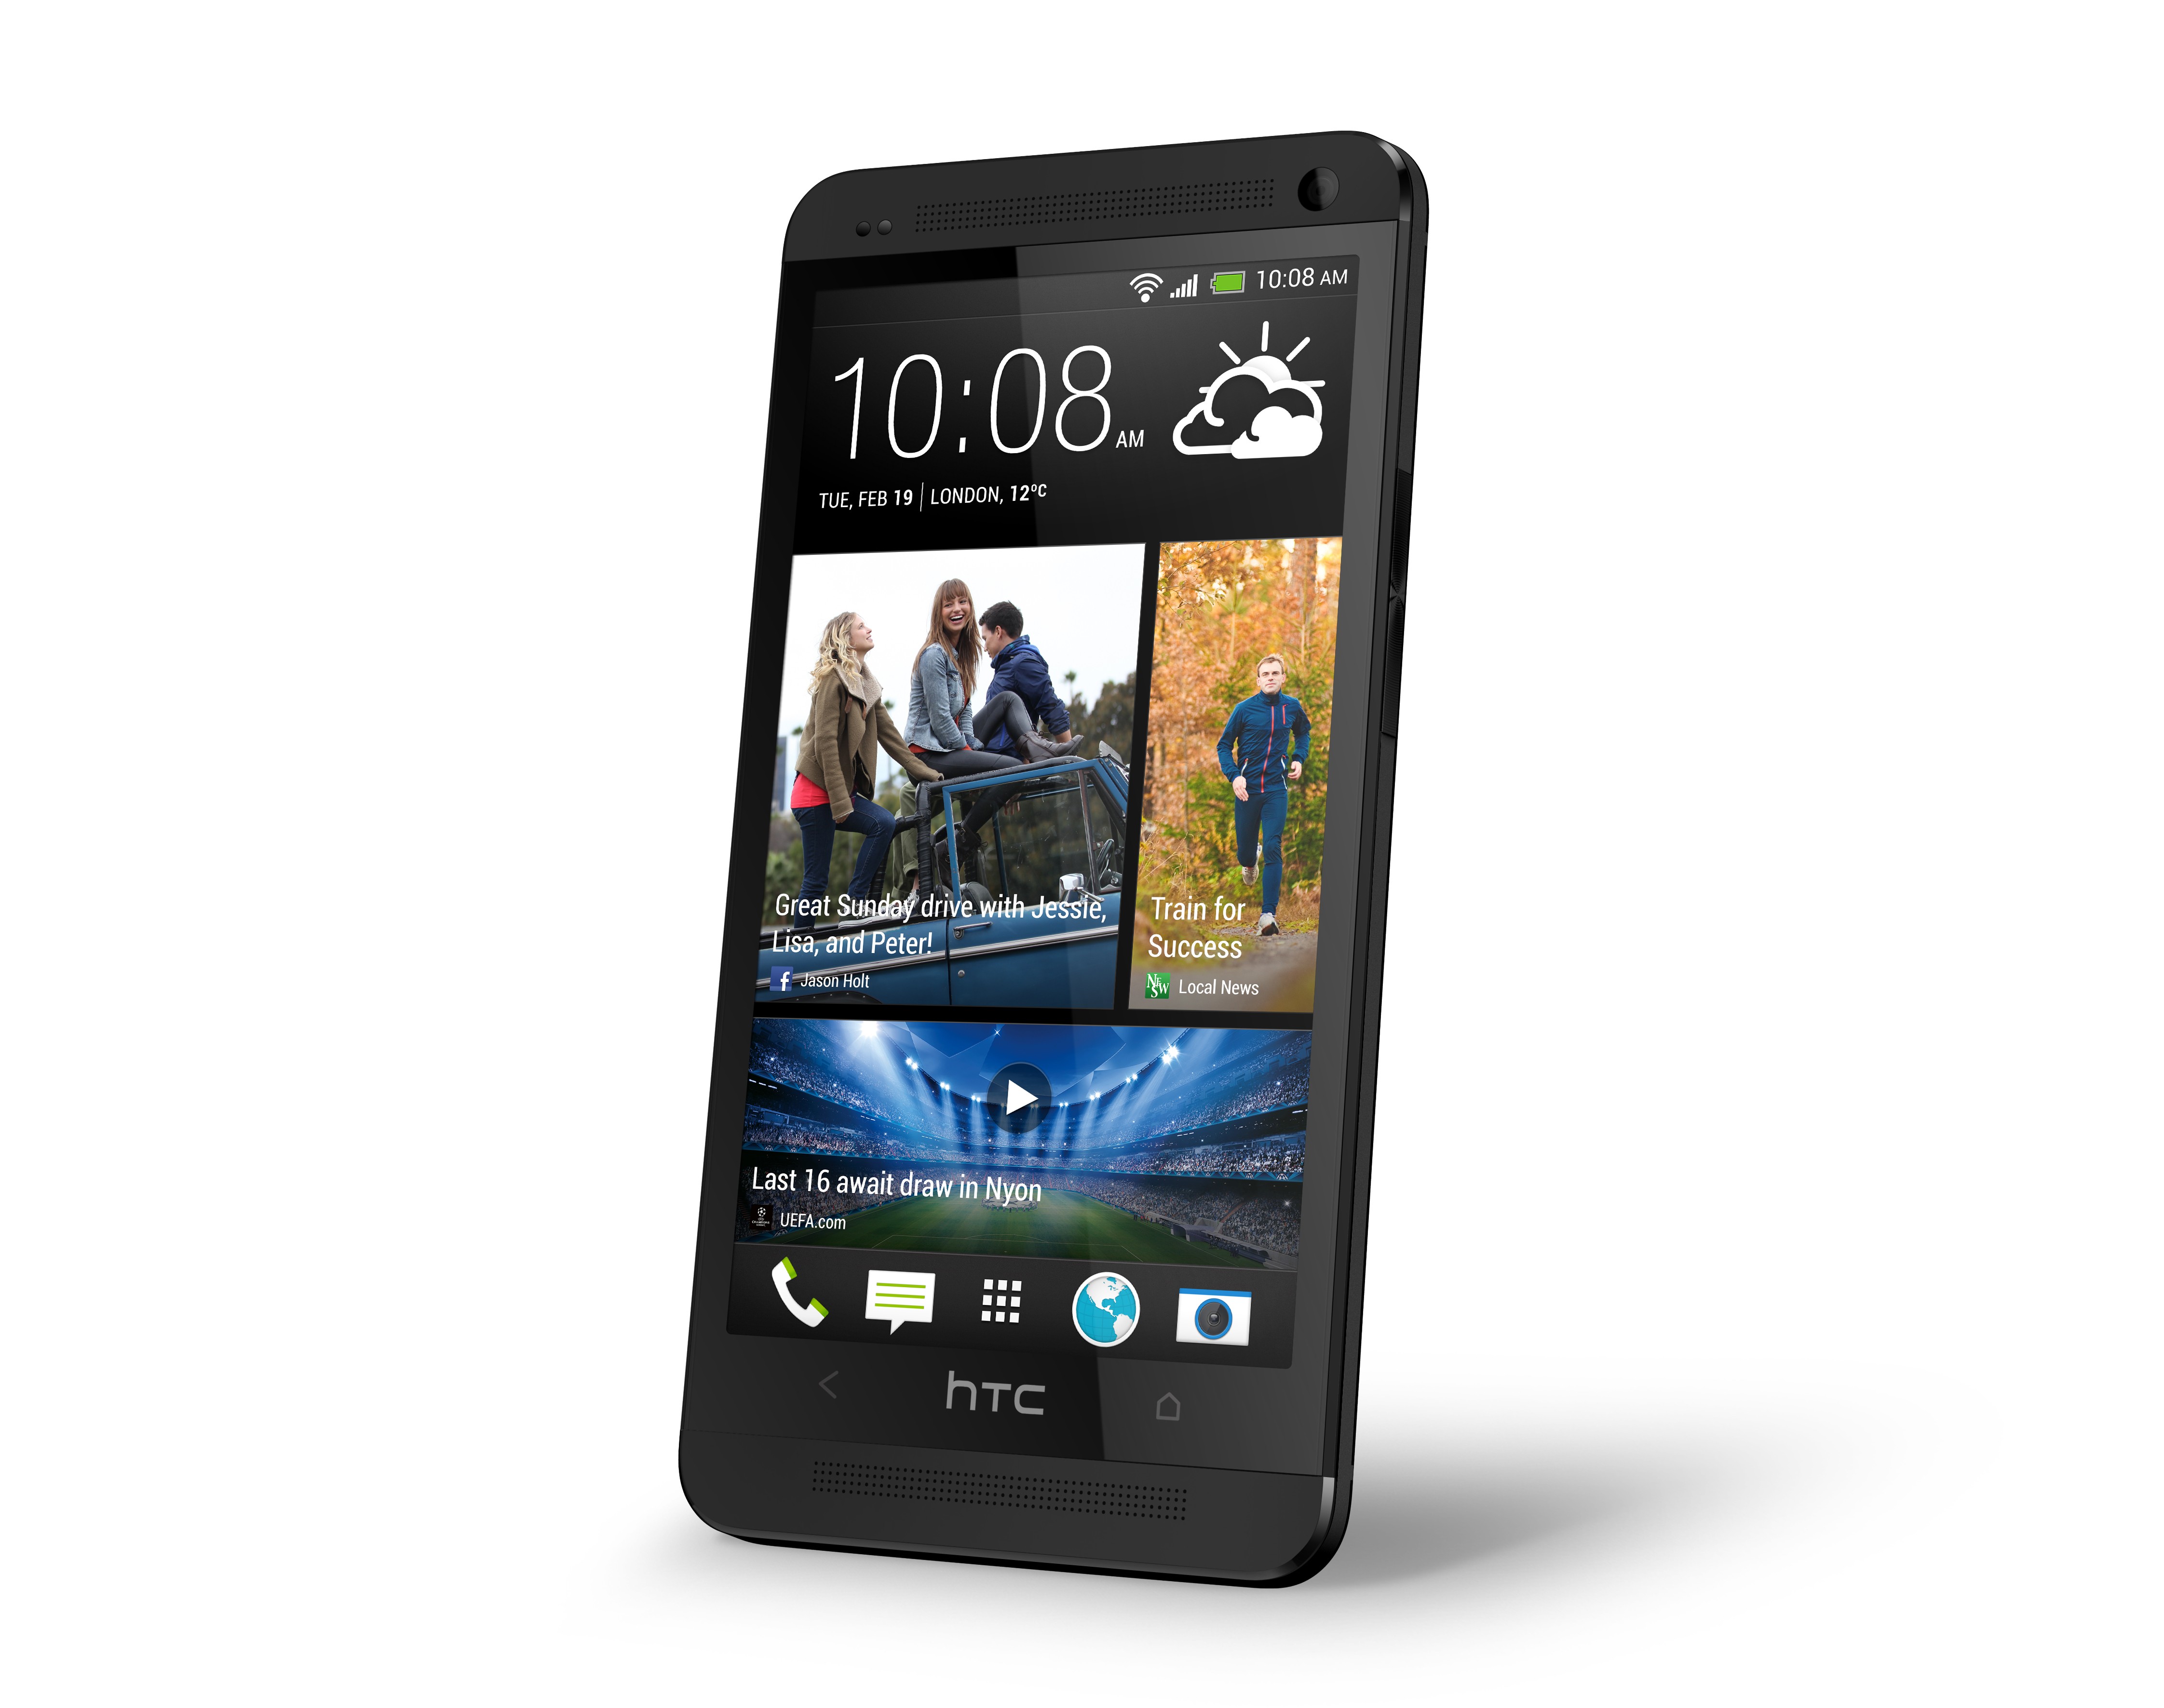 Immagine pubblicata in relazione al seguente contenuto: Bloomberg rivela alcune specifiche dello smartphone HTC One M8 | Nome immagine: news20637_HTC-ONE_1.jpg